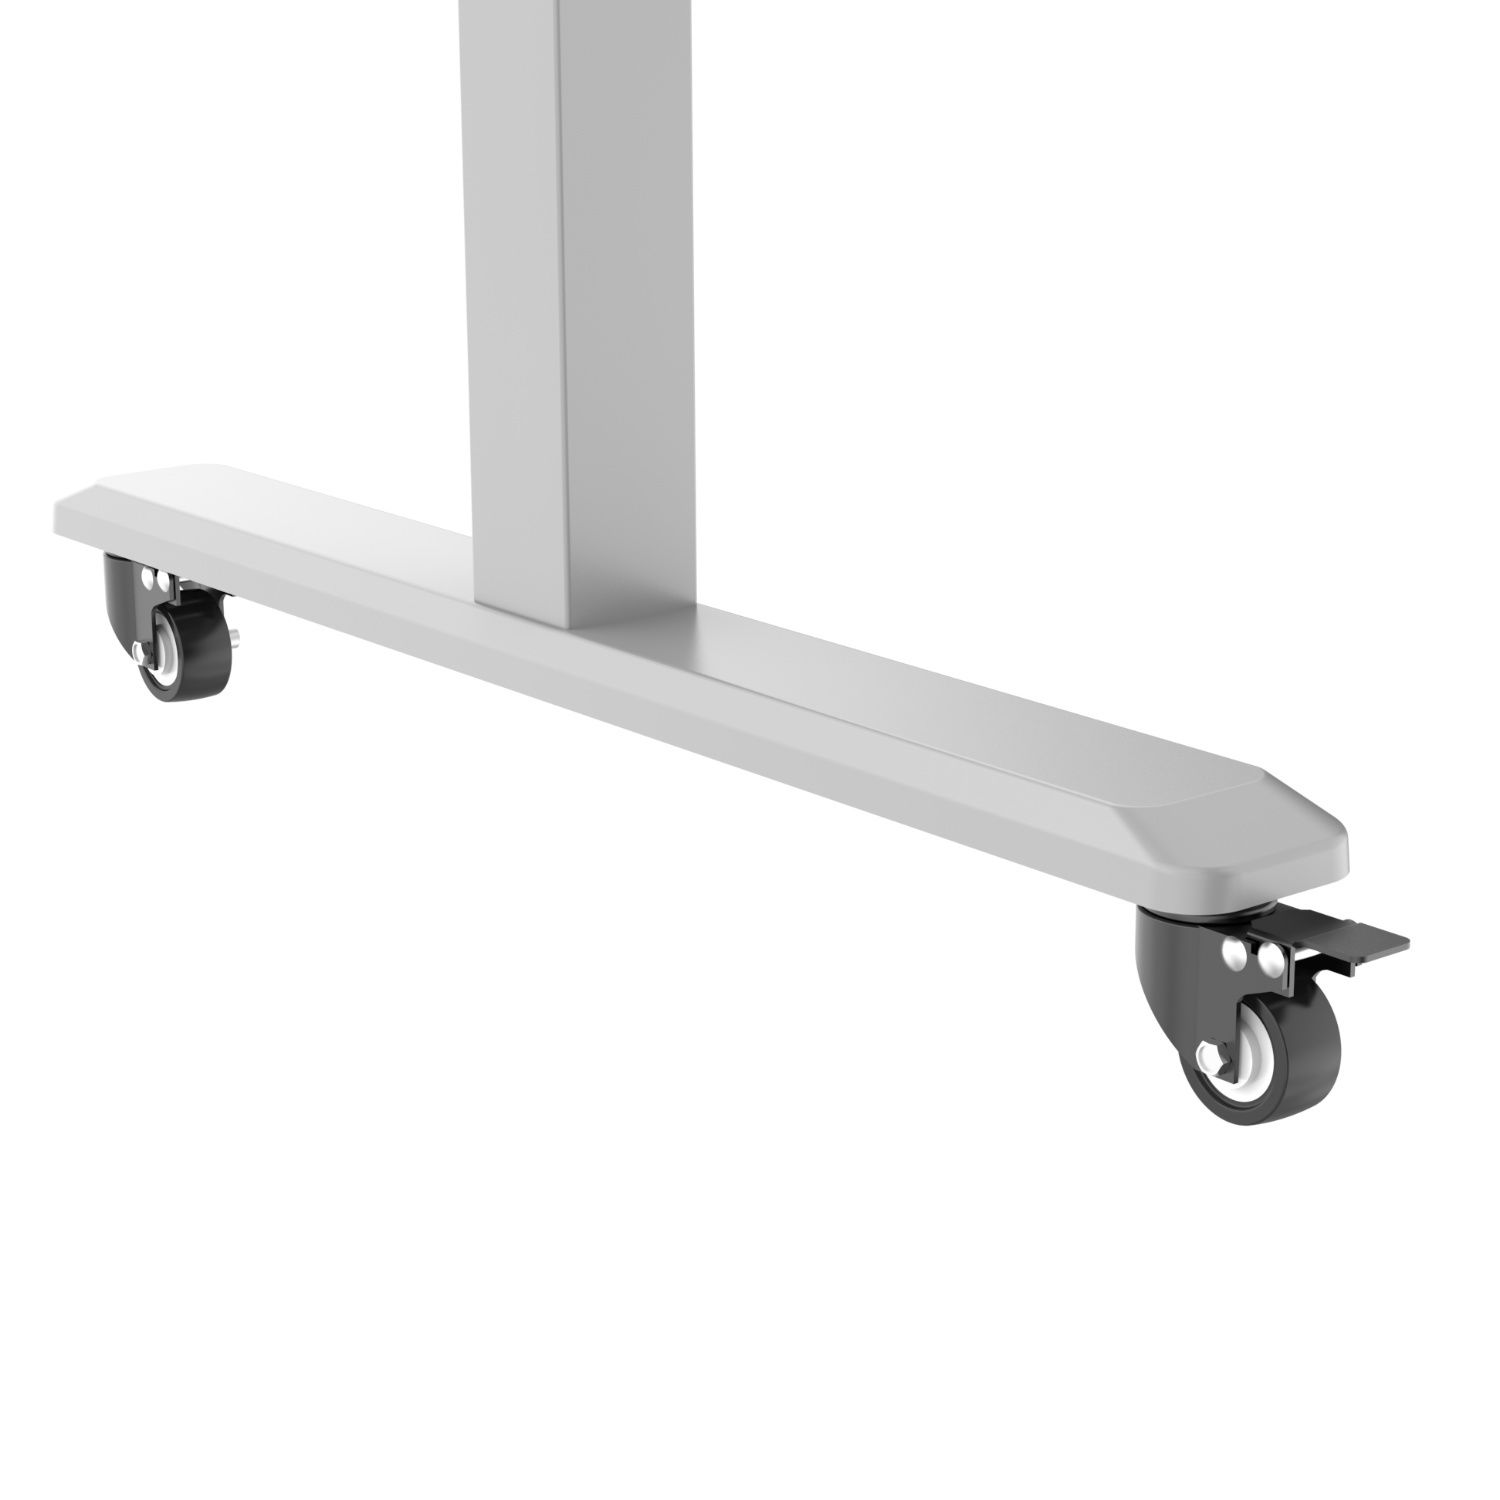 Höhenverstellbare Schreibtisch-Füße Tischgestell HOKO Handkurbel mit